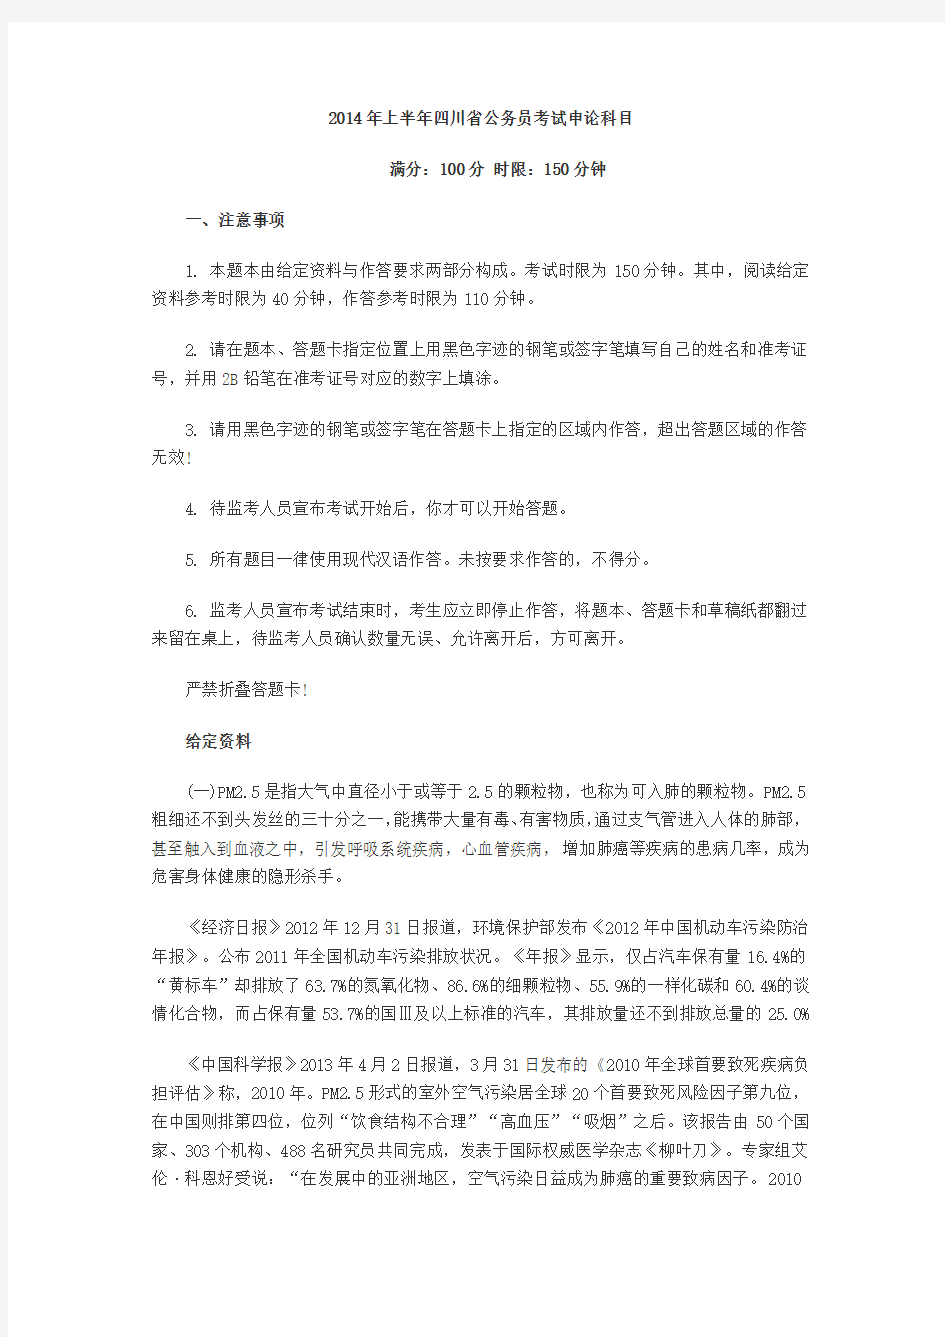 2014年4月27日四川公务员考试申论真题答案解析